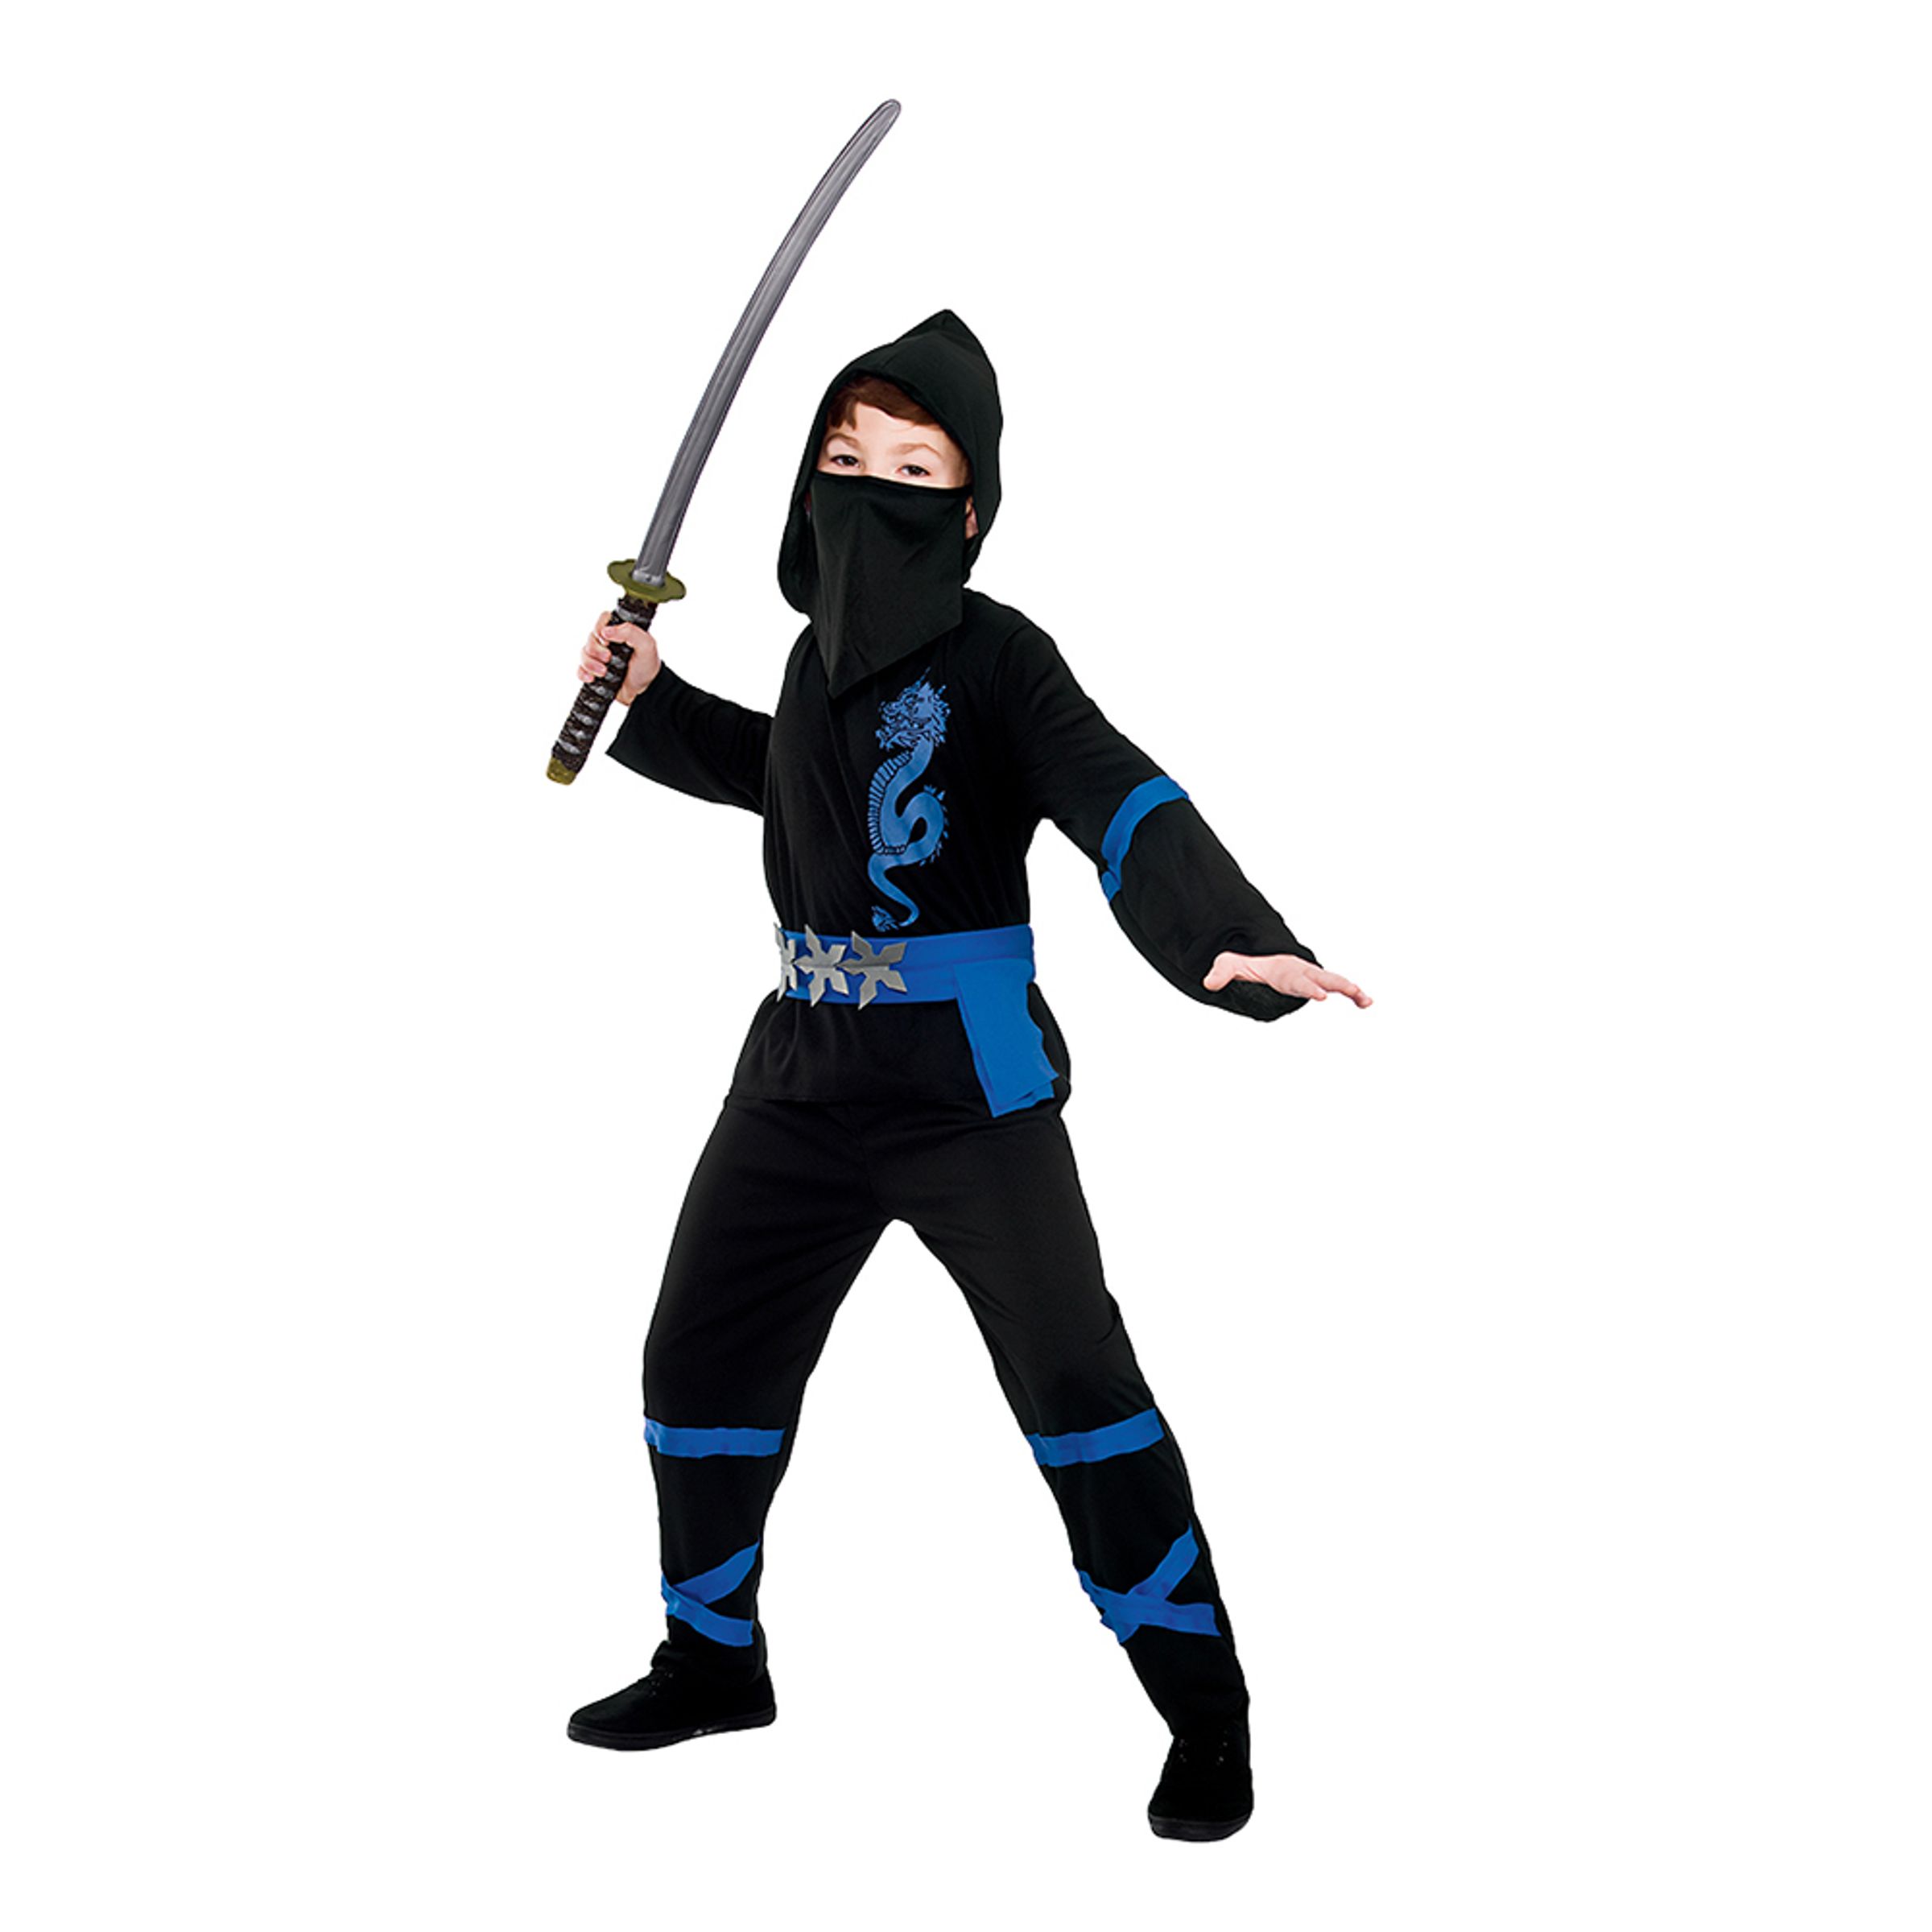 Svart/Blå Power Ninja Barn Maskeraddräkt - Large